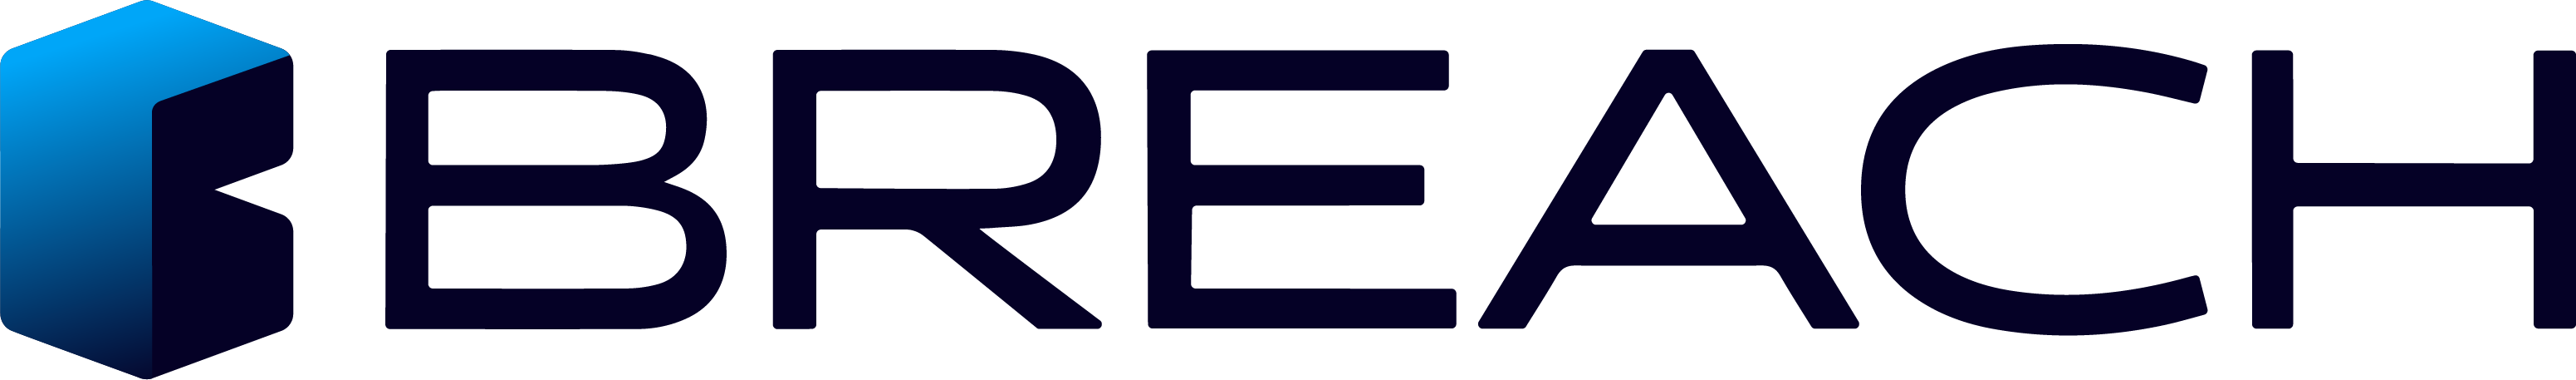 Breach company logo